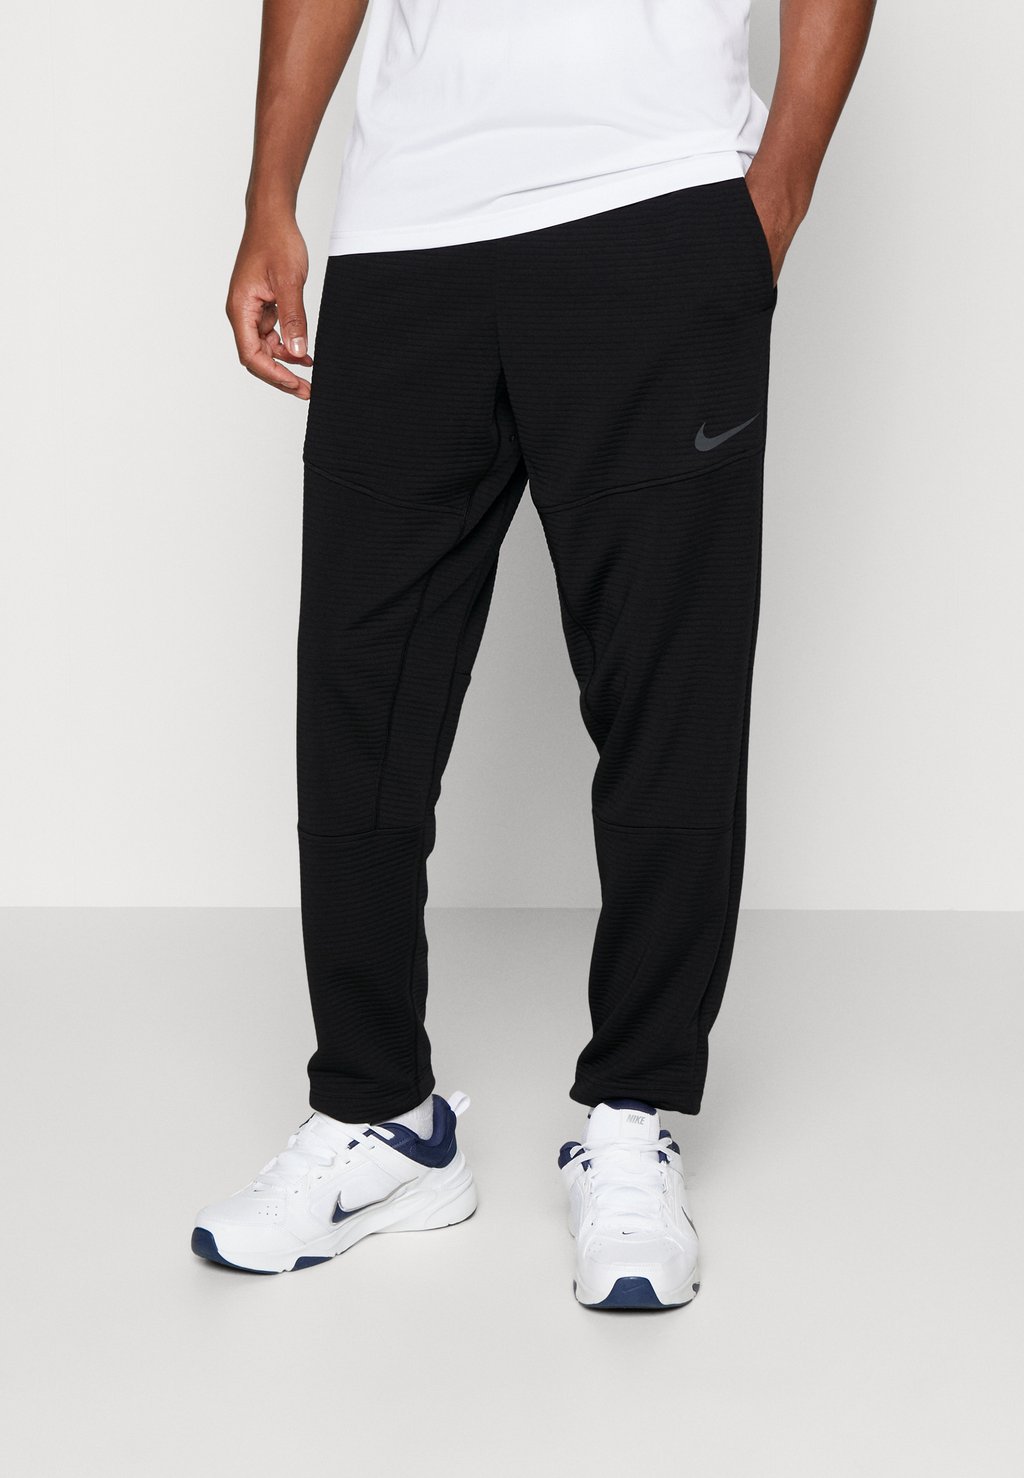 Спортивные брюки Pant Nike, черный спортивные брюки nike as m nsw punk pant drawstring black cu4270 010 черный